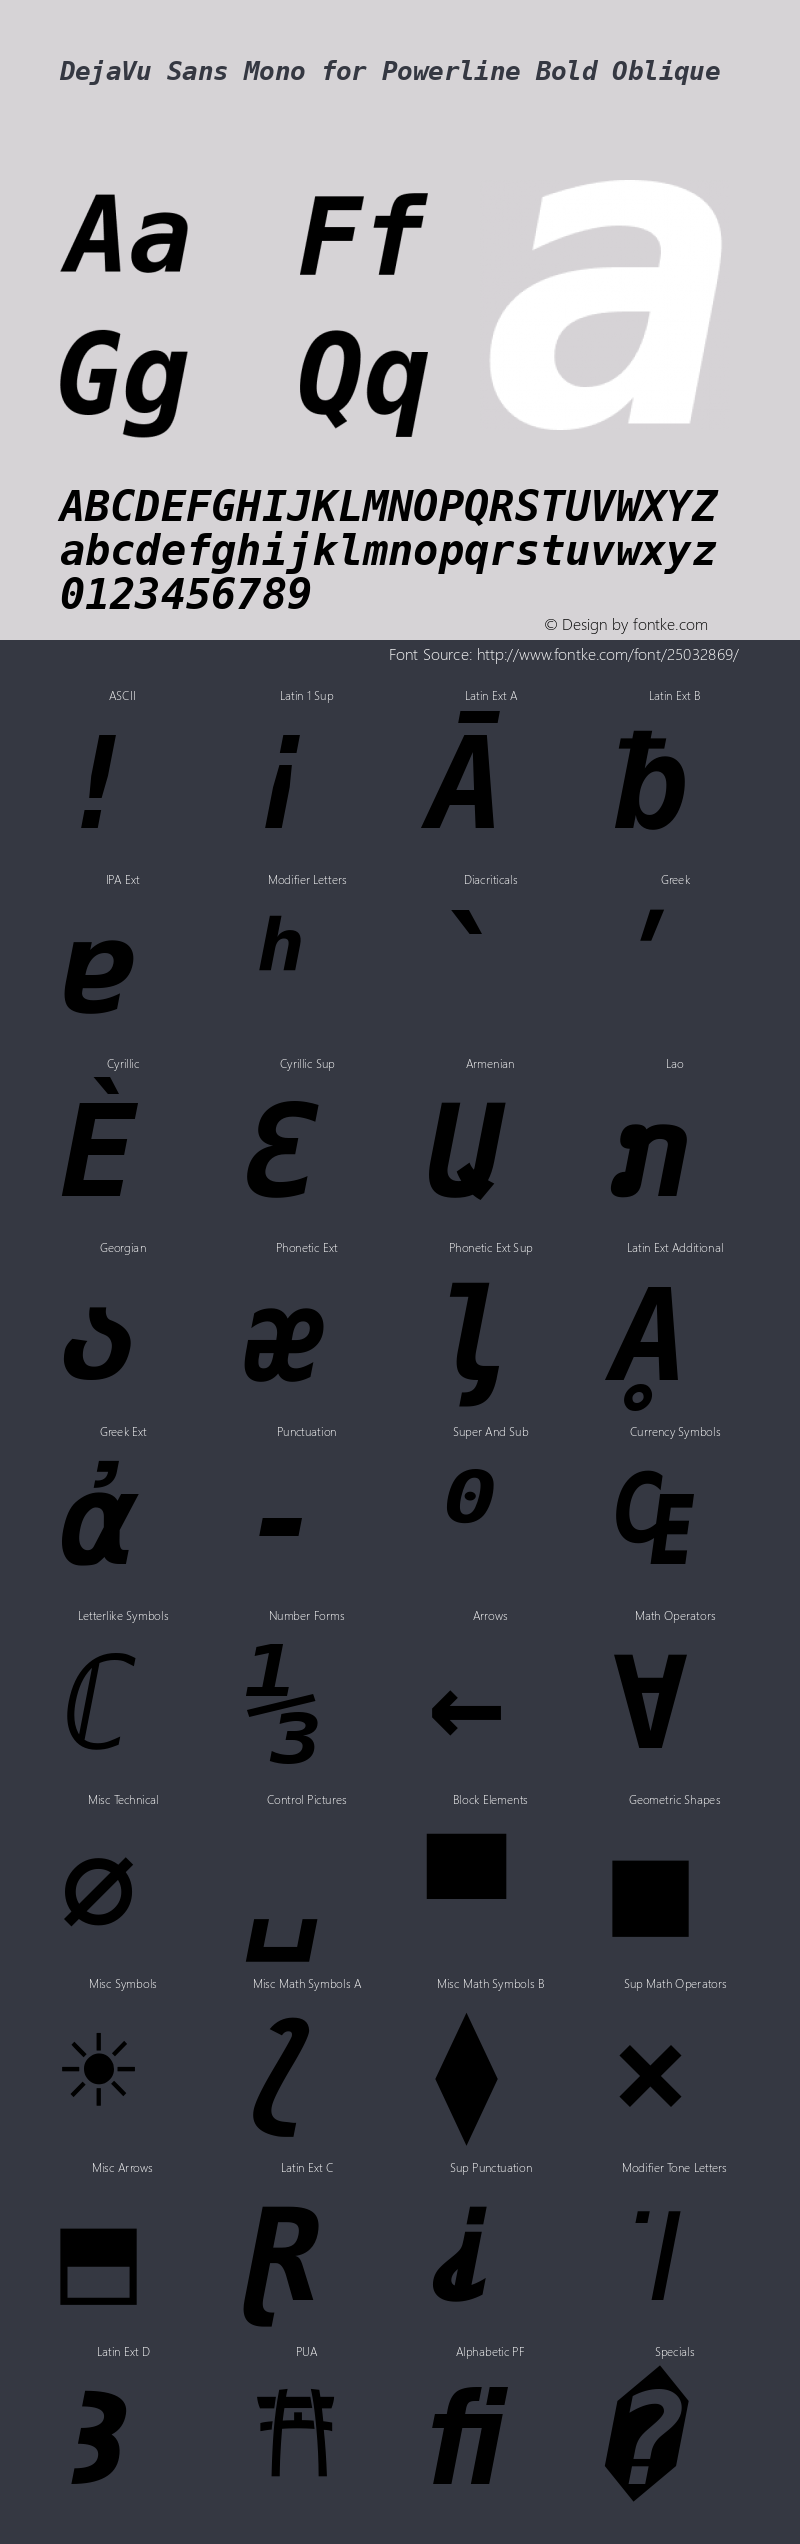 DejaVu Sans Mono Bold Oblique for Powerline Nerd Font Plus Font Awesome Plus Octicons Plus Pomicons Mono Version 2.33图片样张